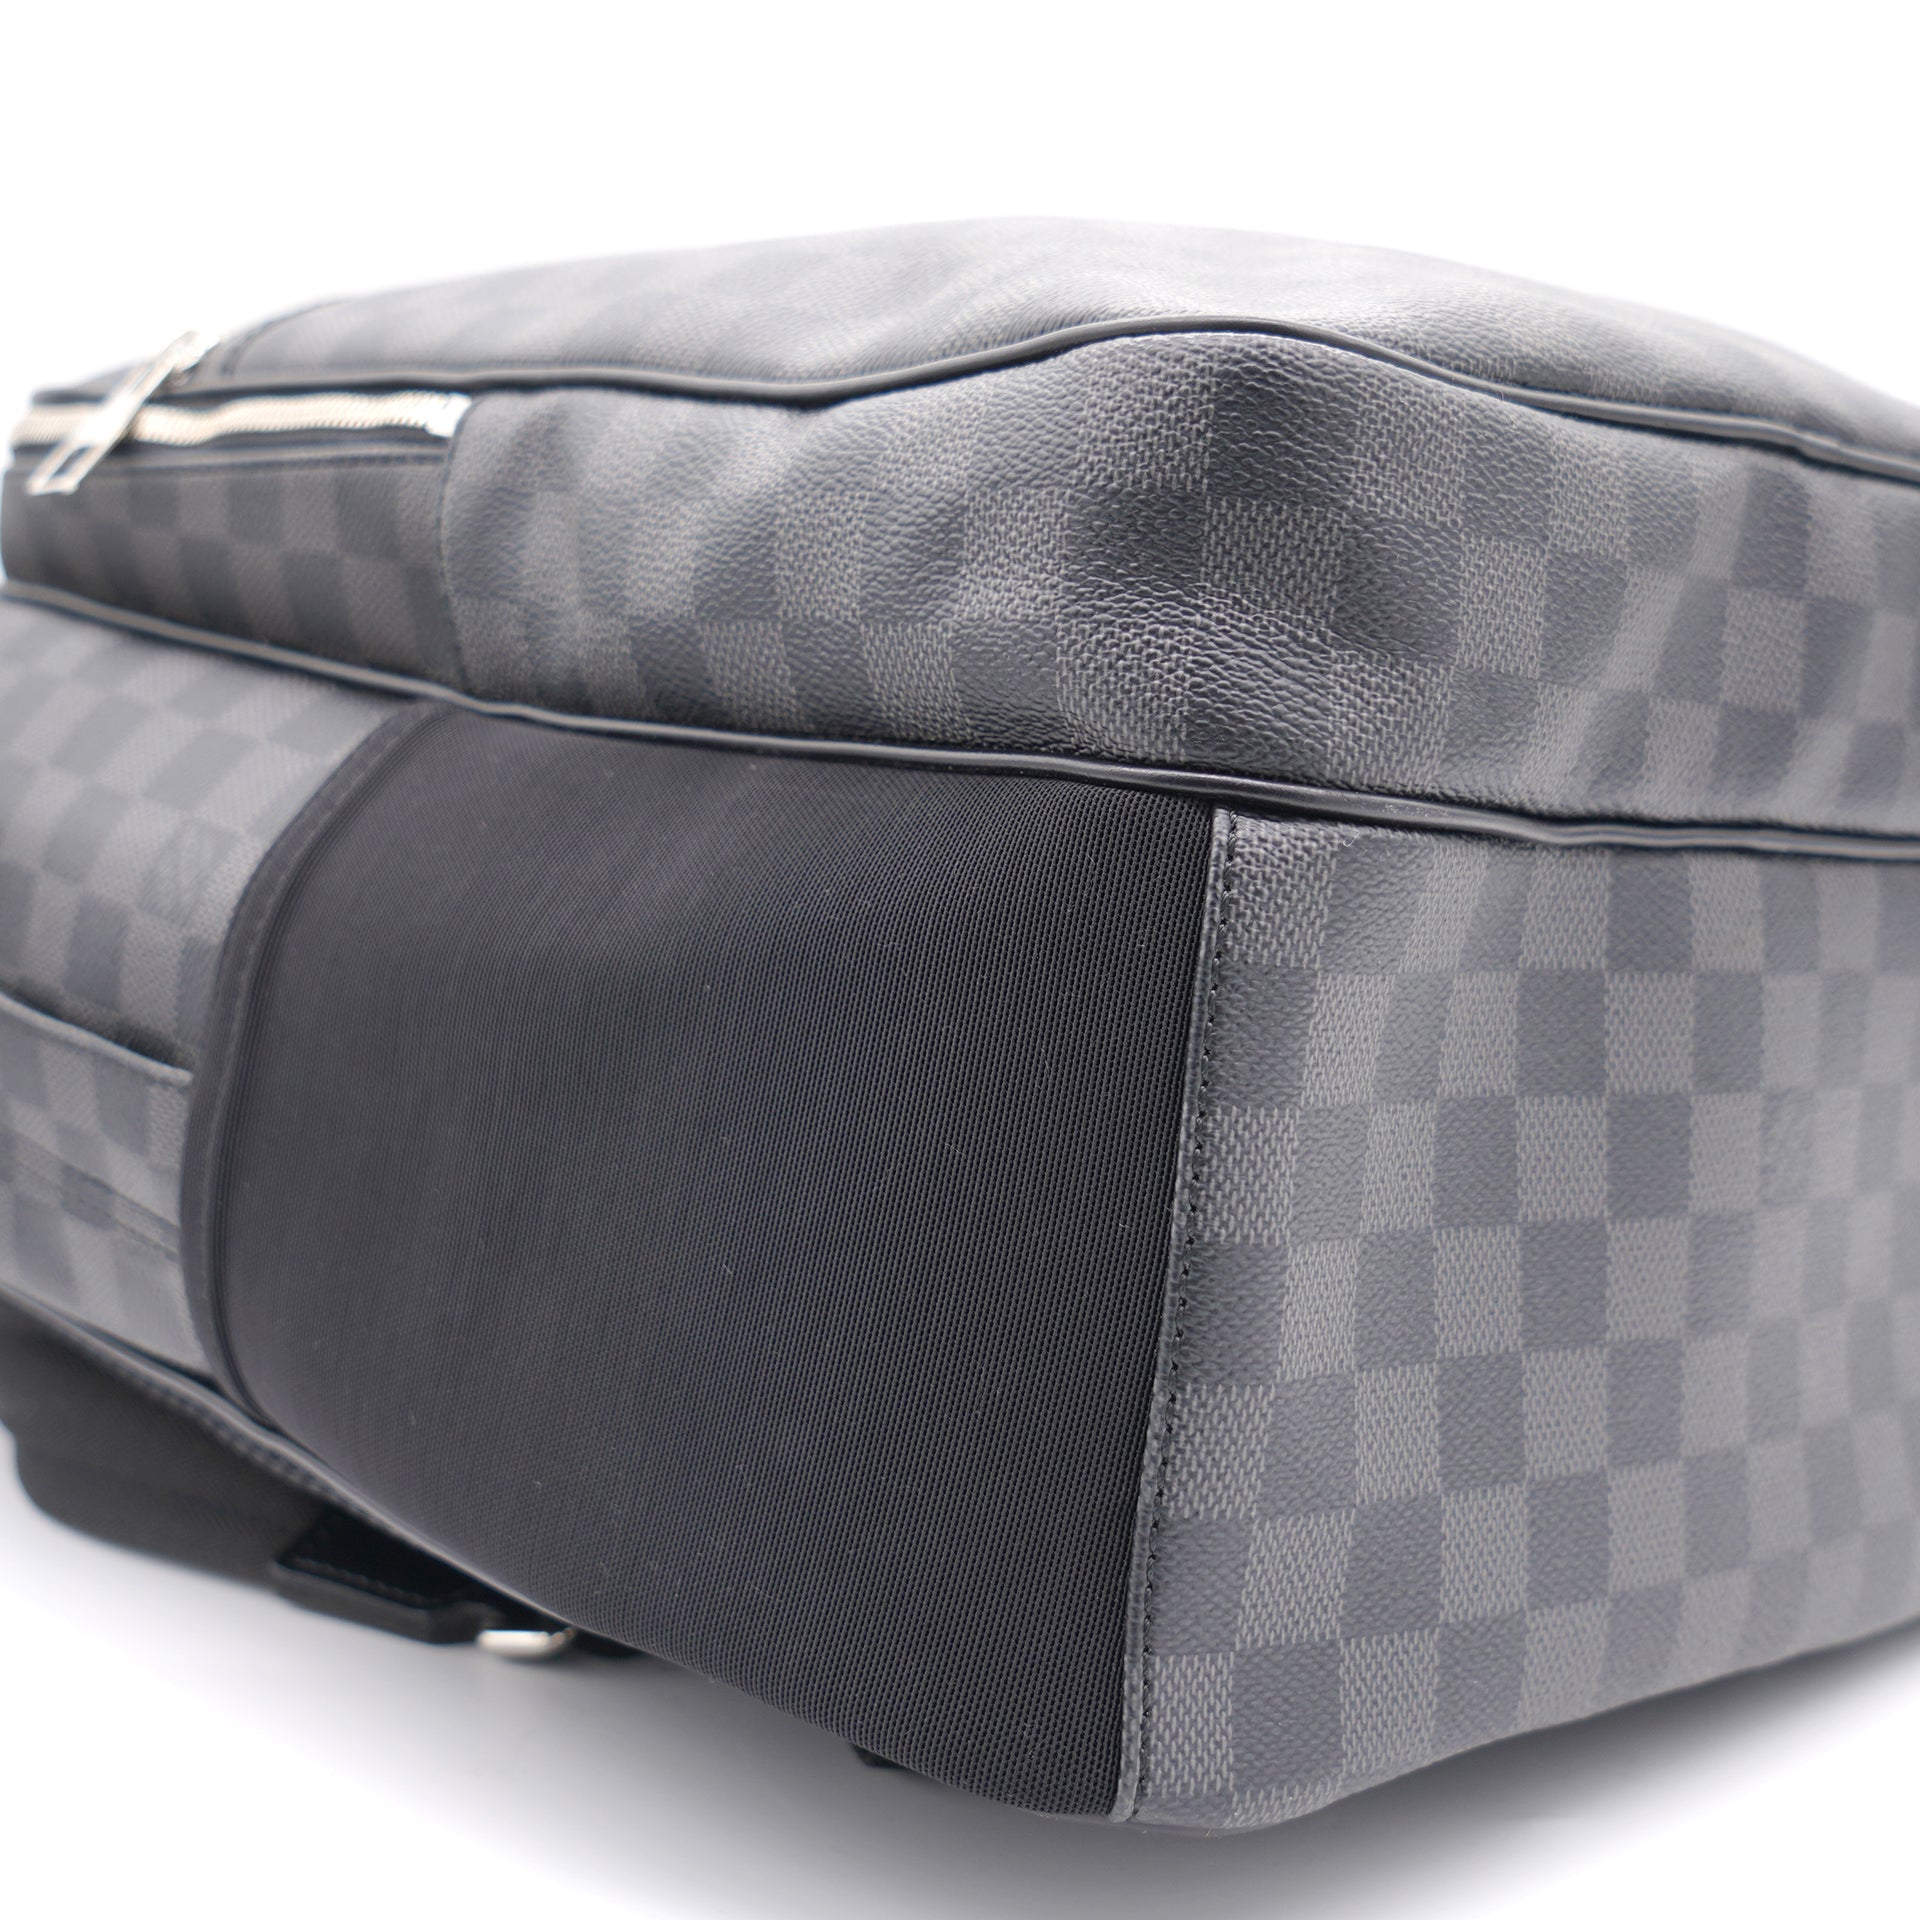 Authentic New Model Louis Vuitton Damier Graphite Canvas Michael Backpack  Bag